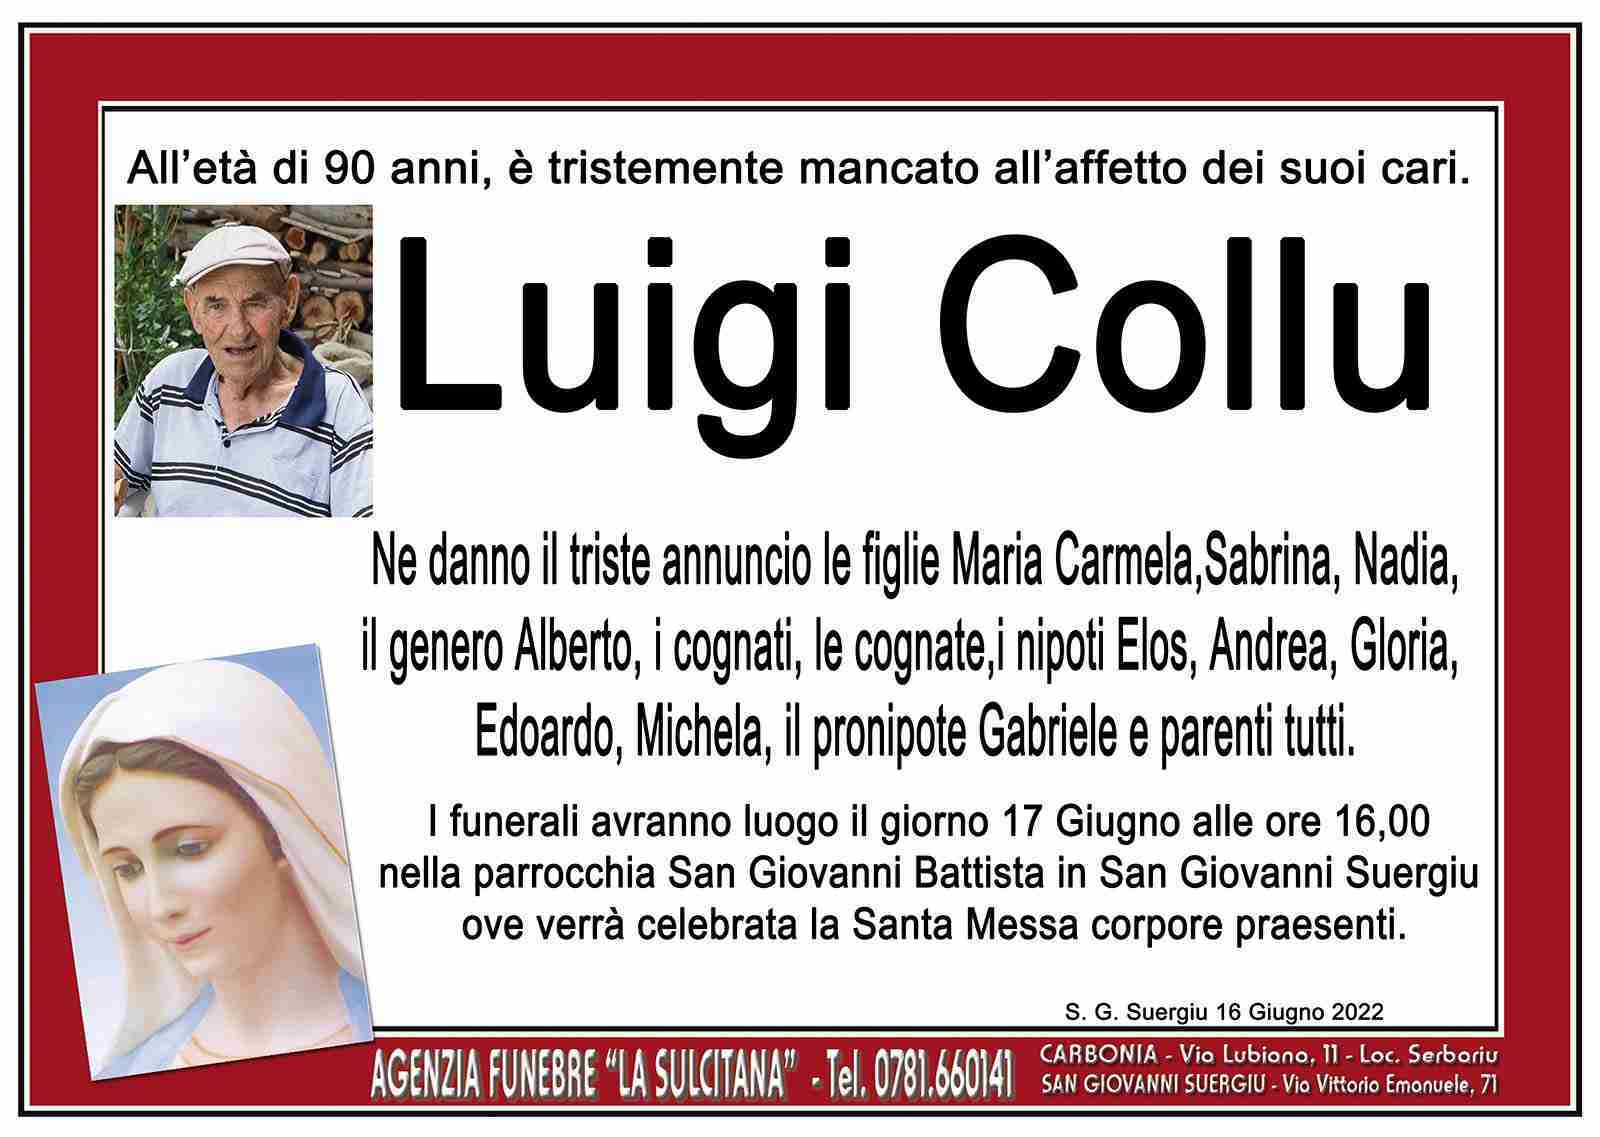 Luigi Collu